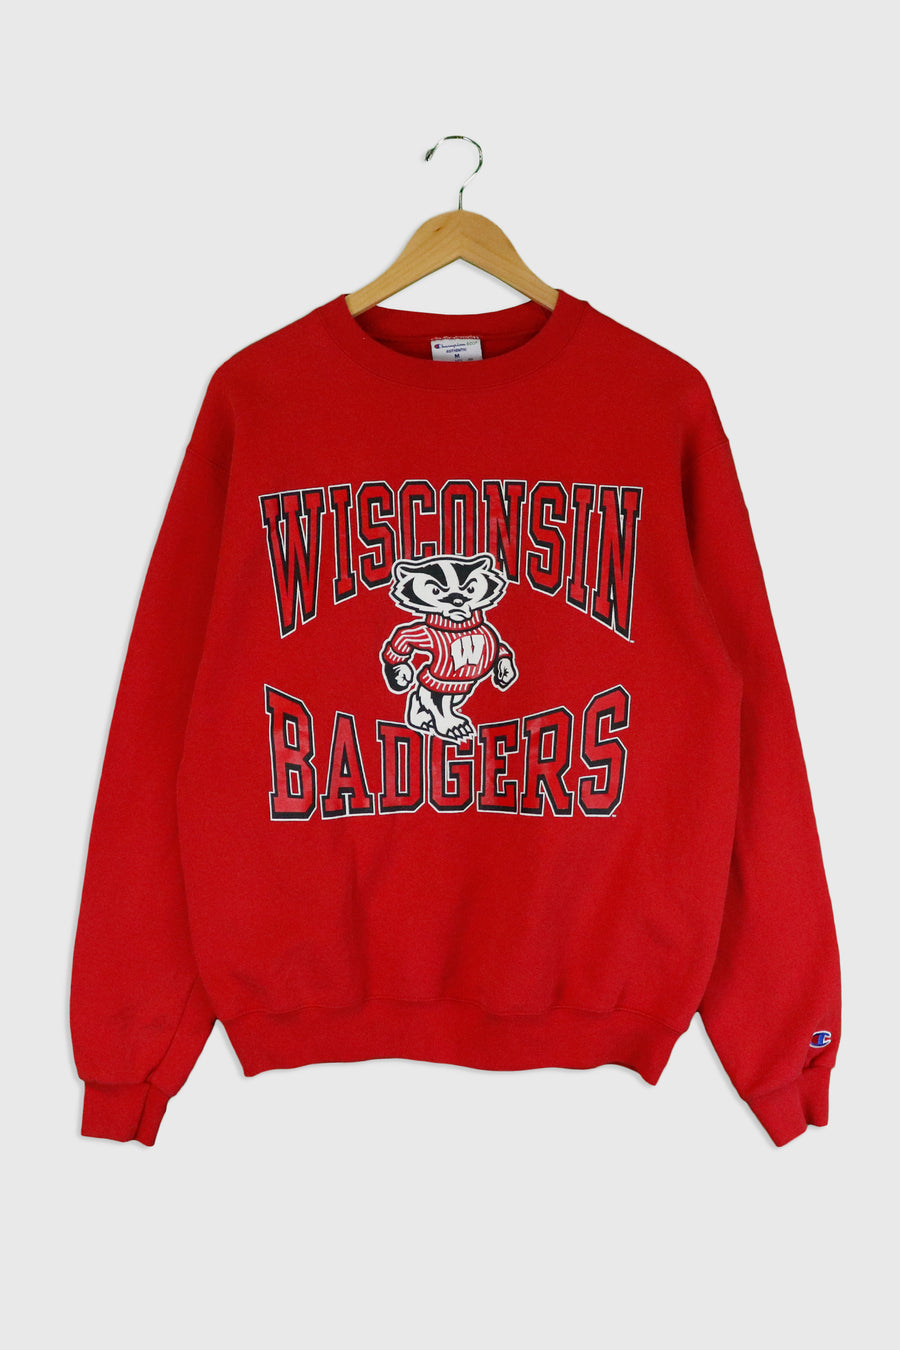 Vintage Wisconsin Badgers Sweatshirt Sz M